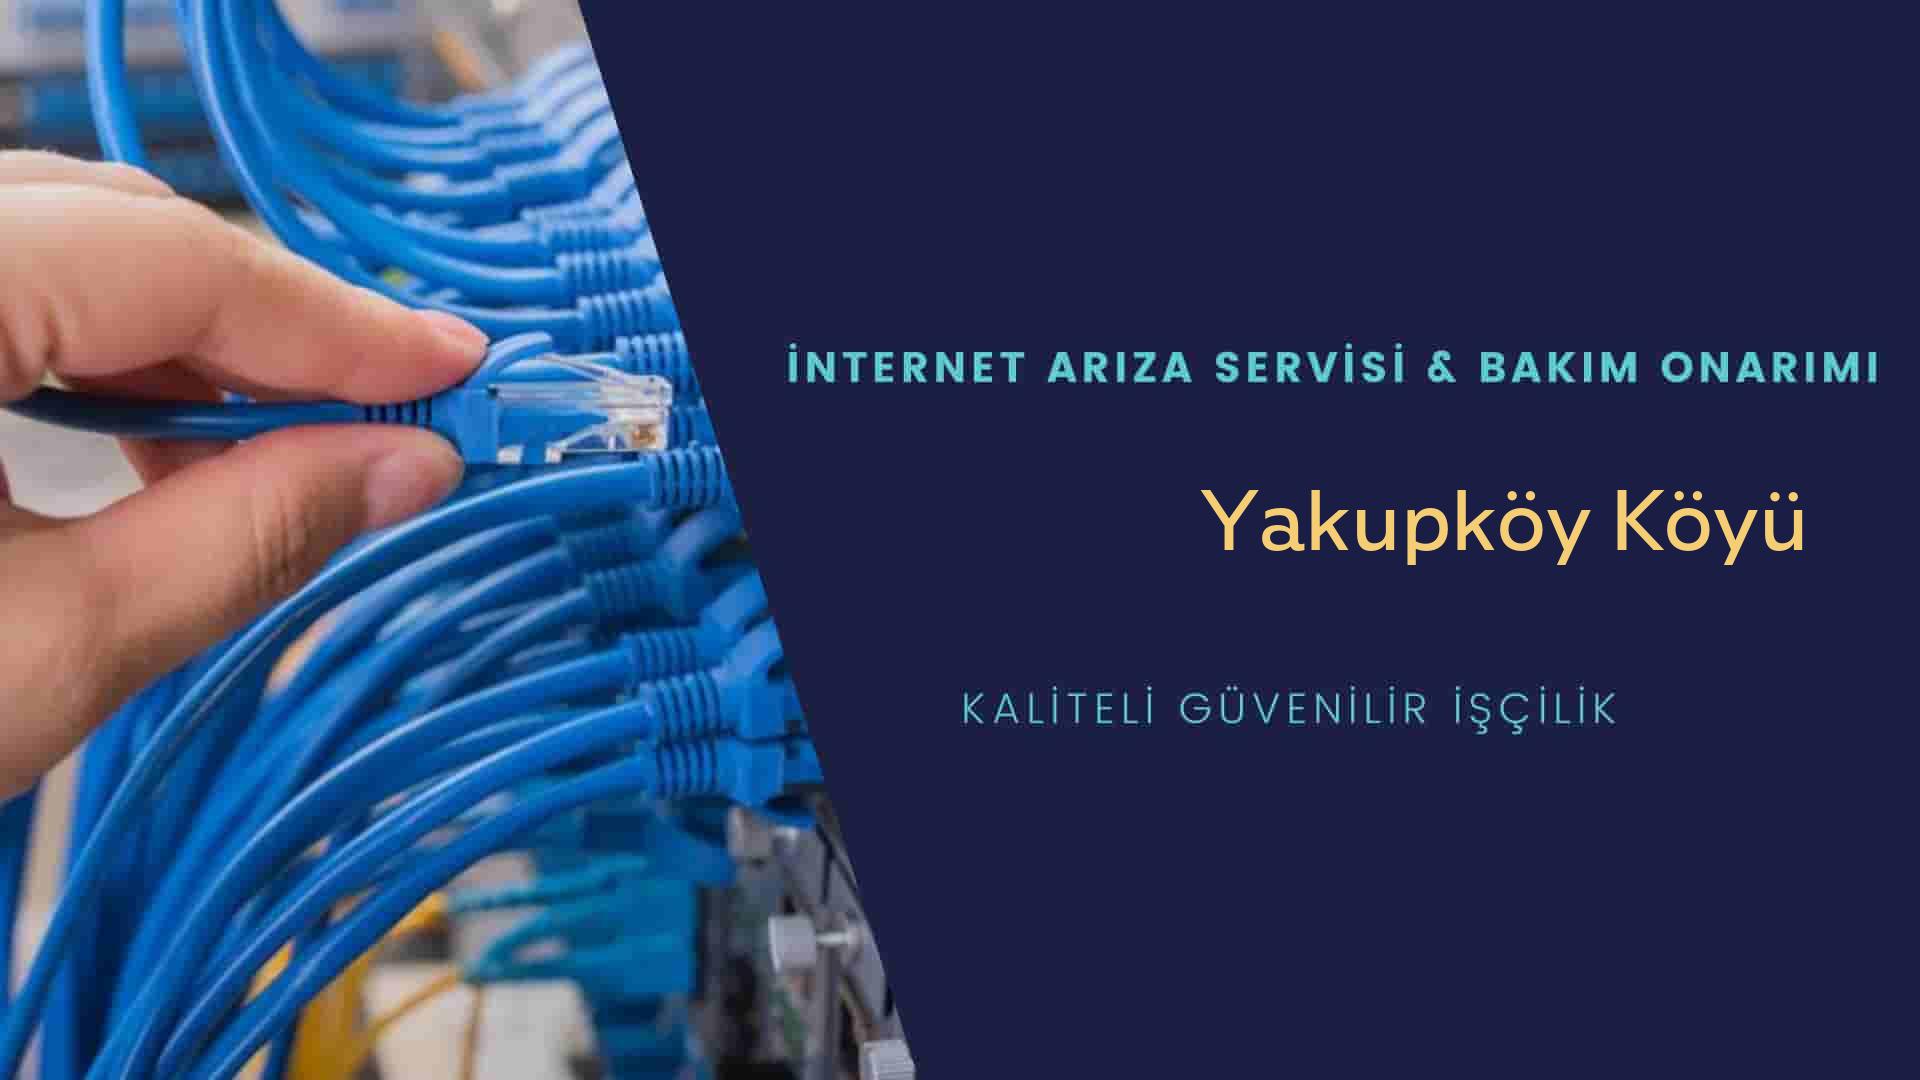 Yakupköy Köyü internet kablosu çekimi yapan yerler veya elektrikçiler mi? arıyorsunuz doğru yerdesiniz o zaman sizlere 7/24 yardımcı olacak profesyonel ustalarımız bir telefon kadar yakındır size.